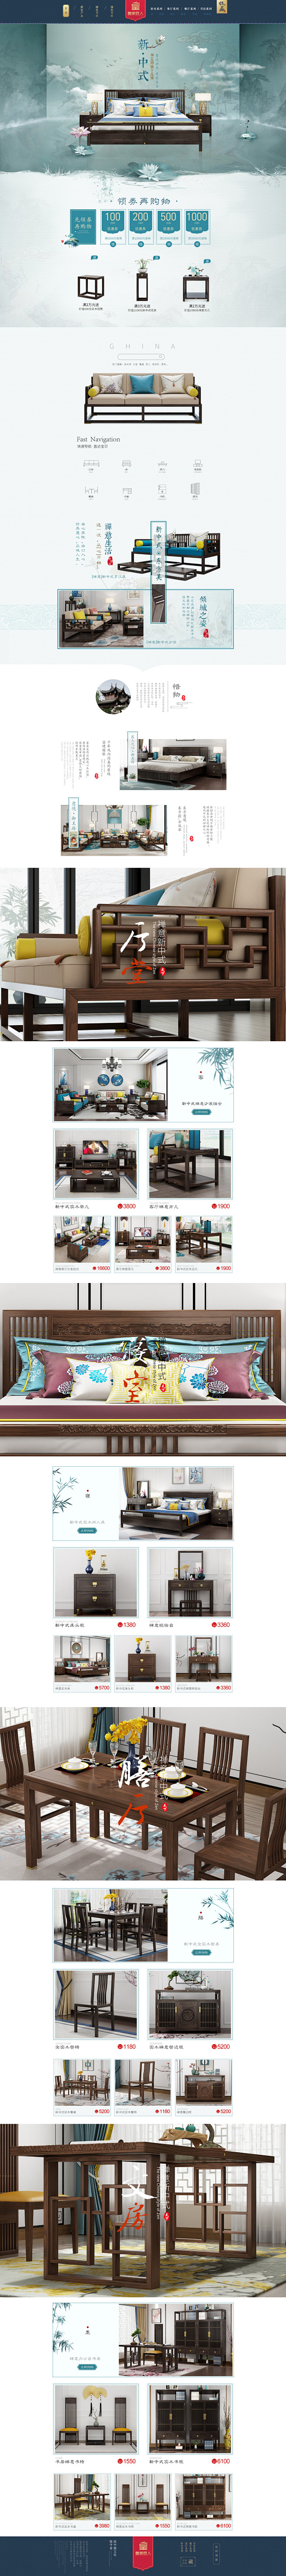 京东新中式家具pc首页
固定背景填充了